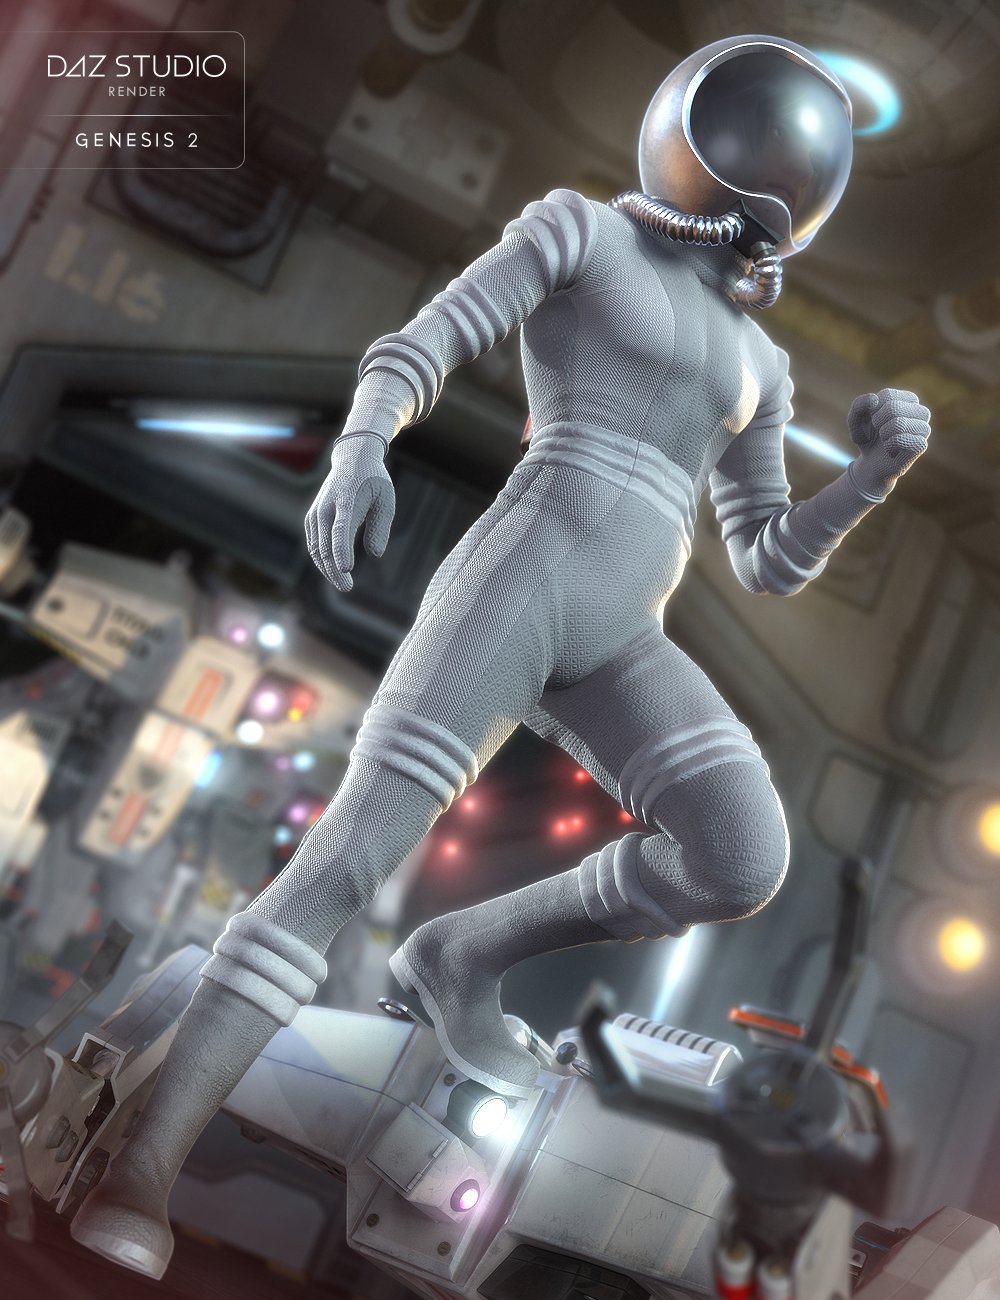 Retro Space Suit for Genesis 2 Male(s) by: NikisatezSarsa, 3D Models by Daz 3D